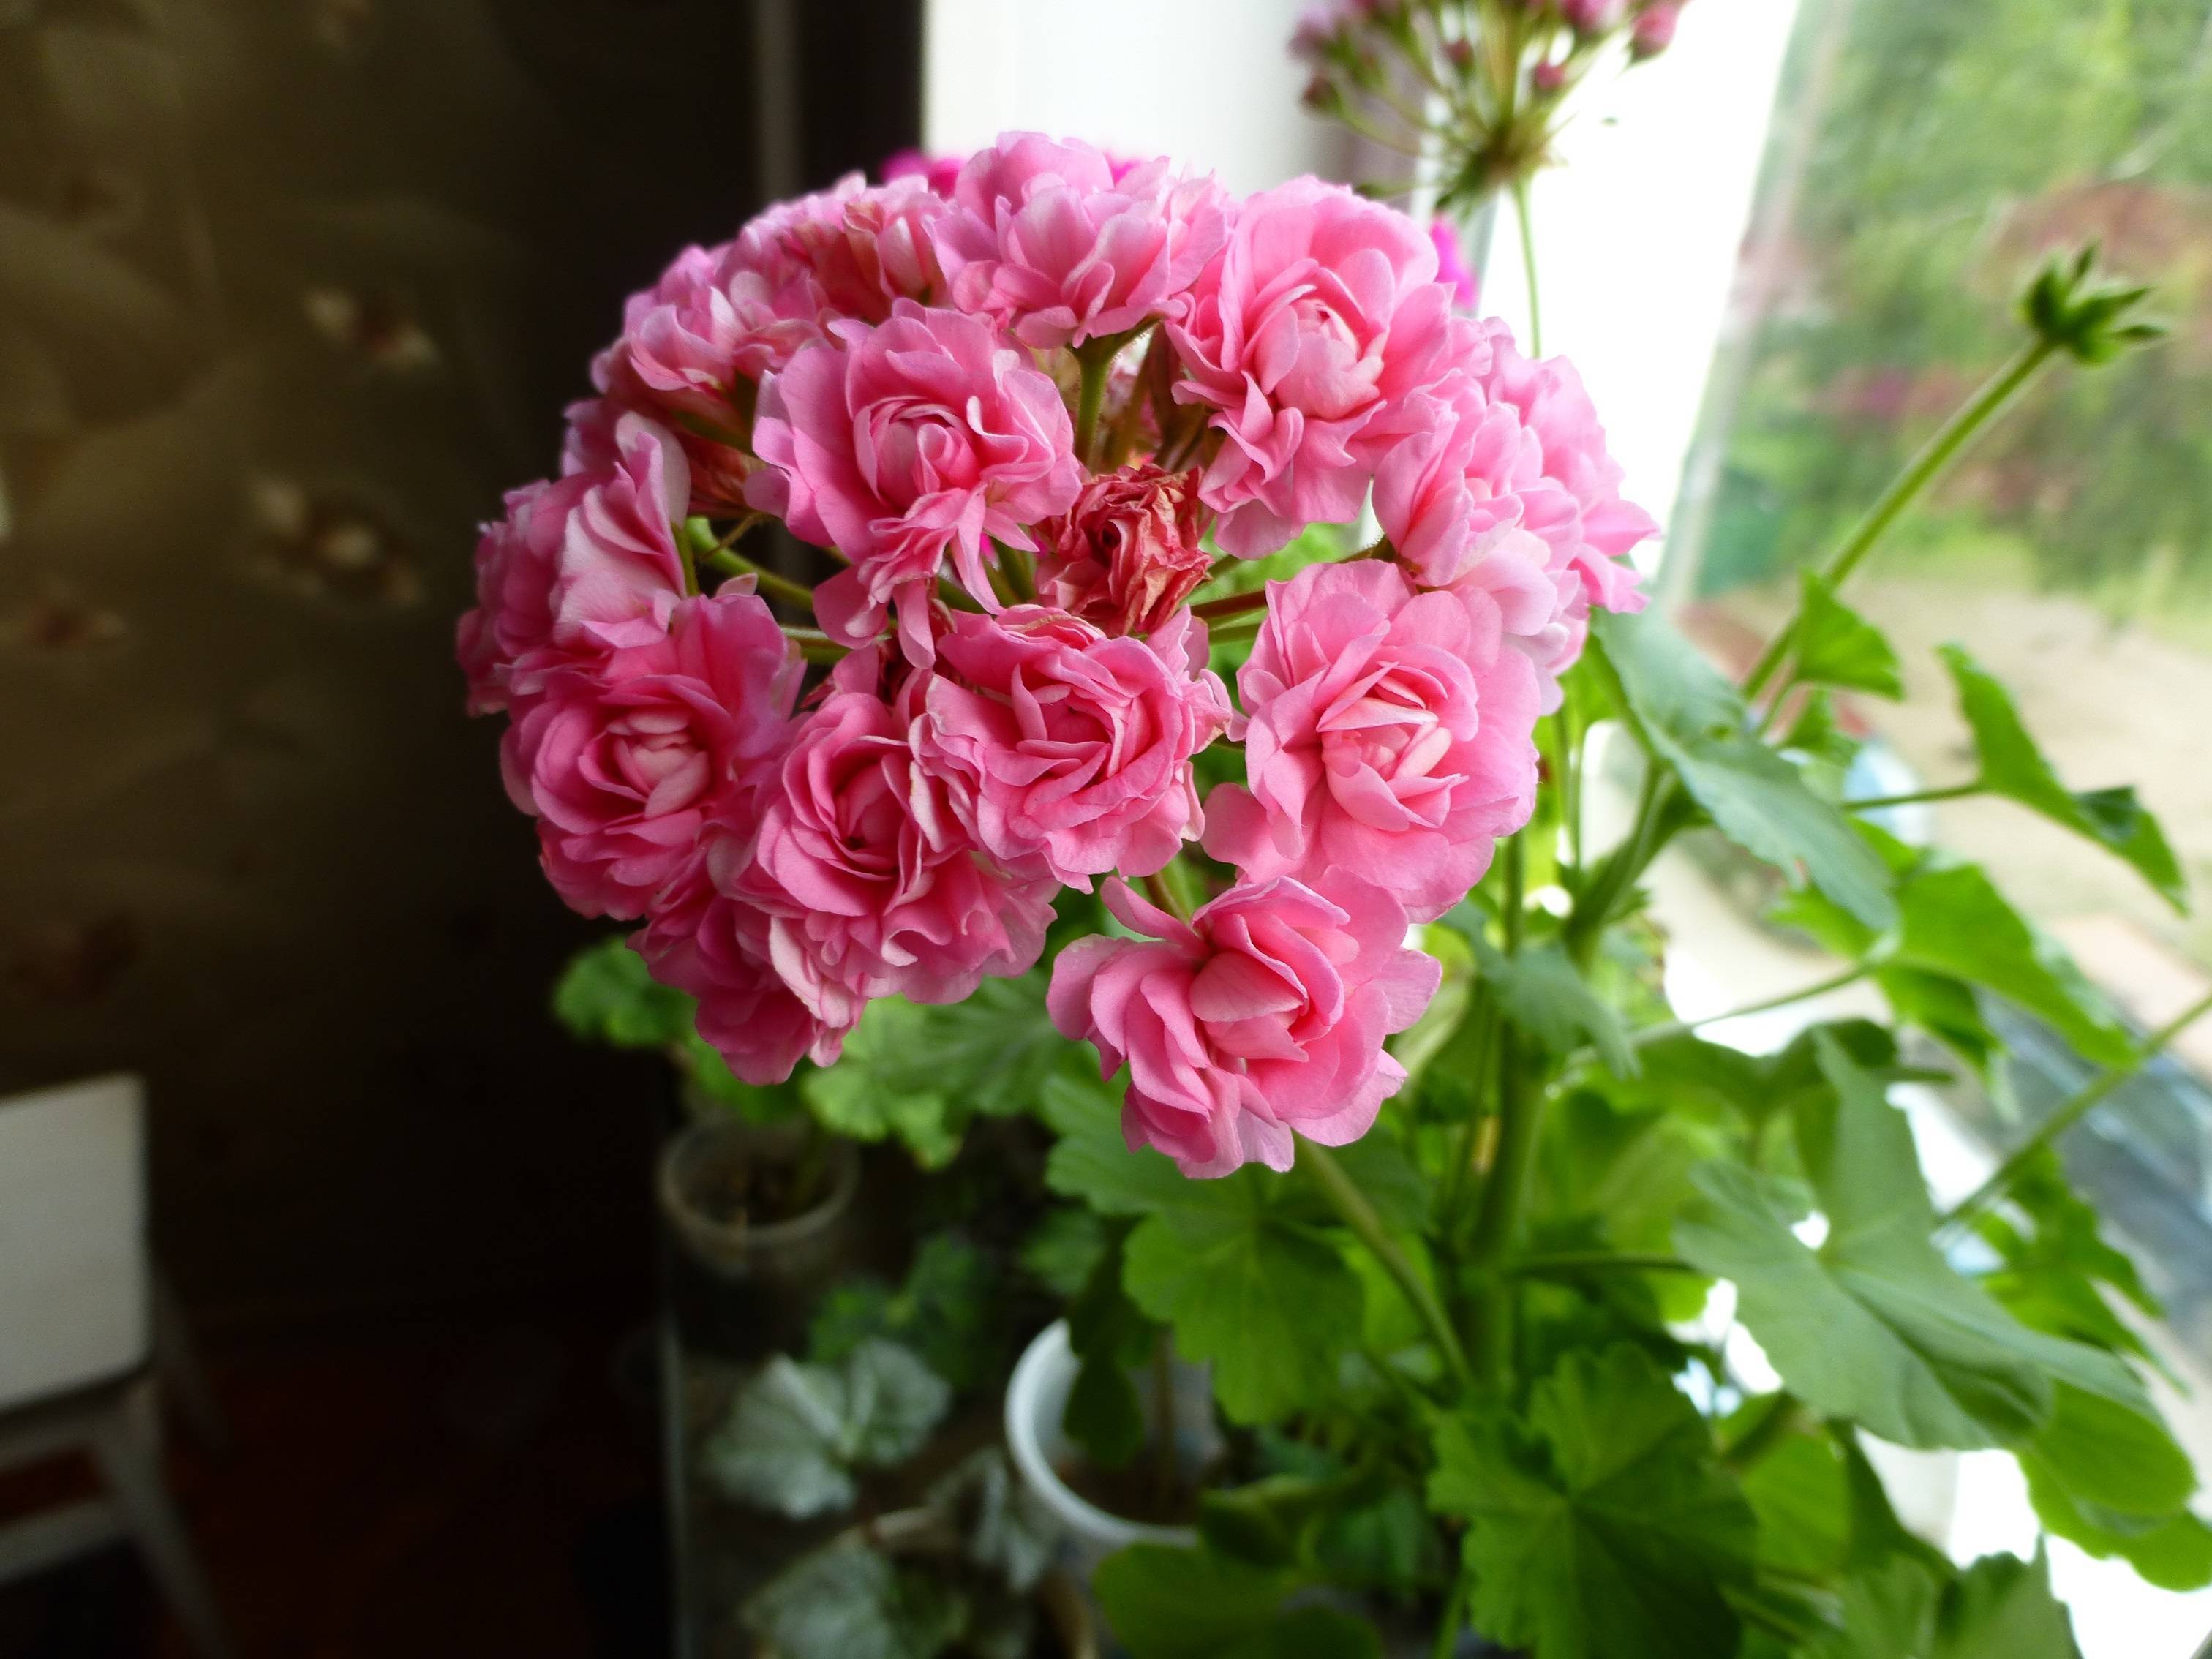 Пеларгония swanland pink/australien pink rosebud: фото и описание